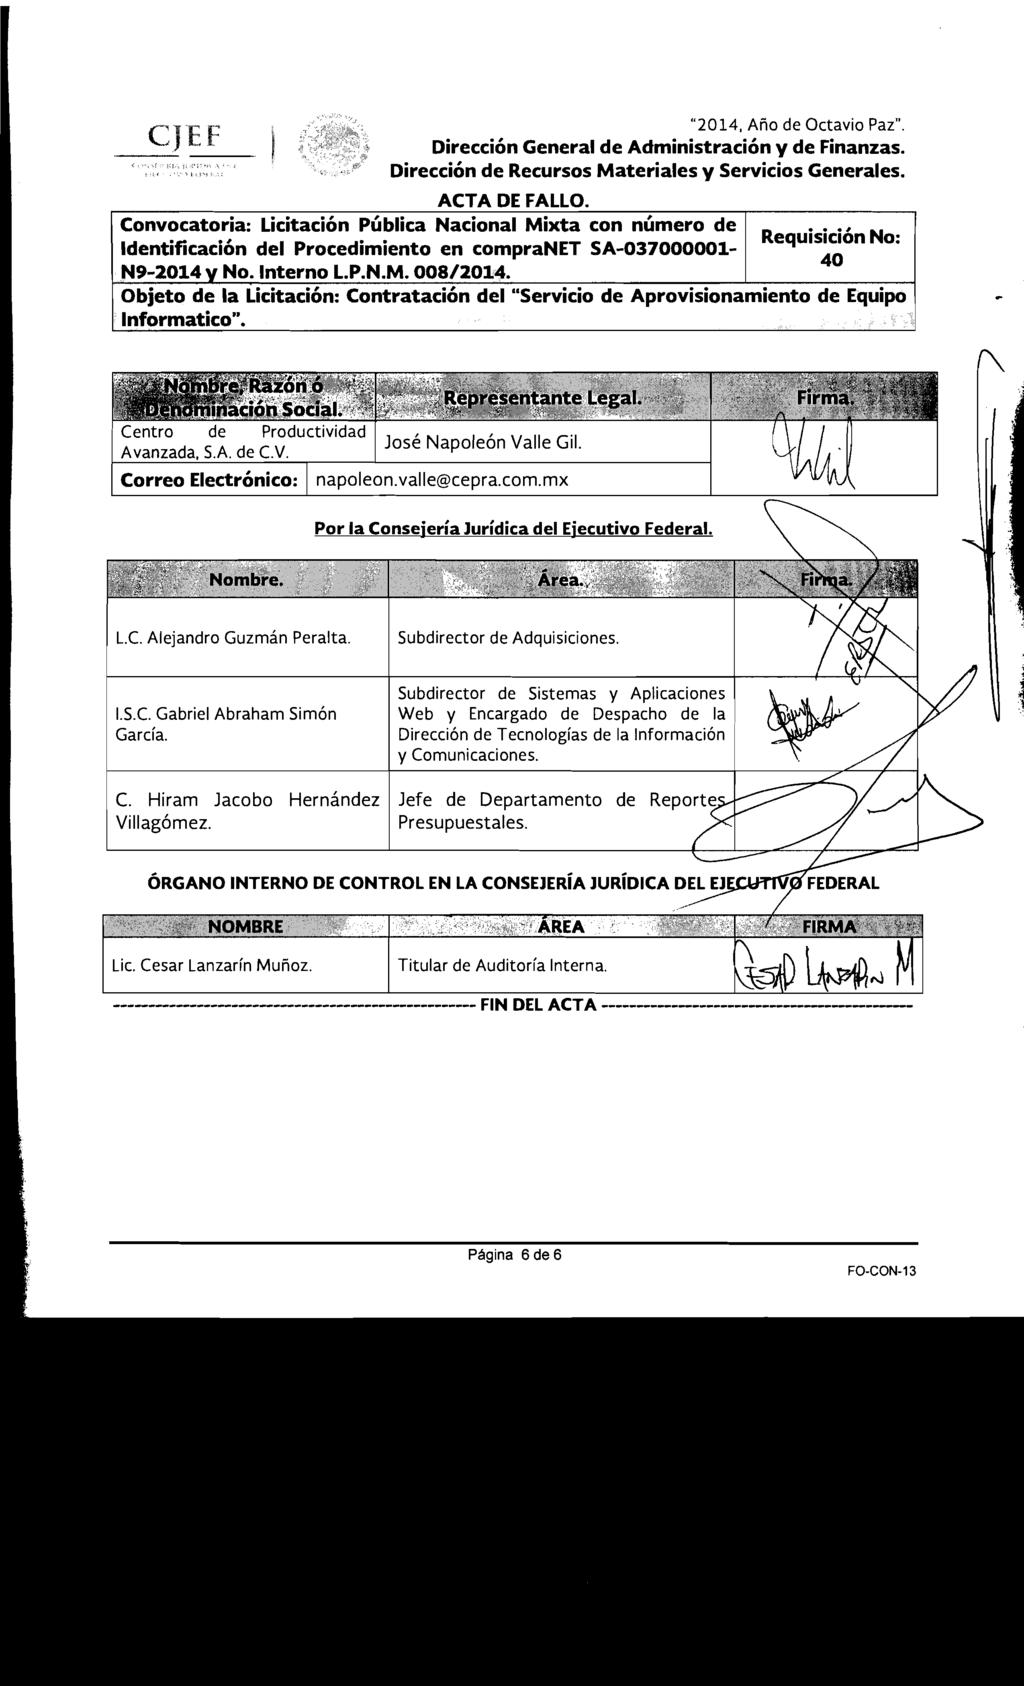 "2014, Año de Octavio Paz". Identificación del Procedimiento en compranet SA-037000001 N9-2014 V No. Interno L.P.N.M. 008/2014.